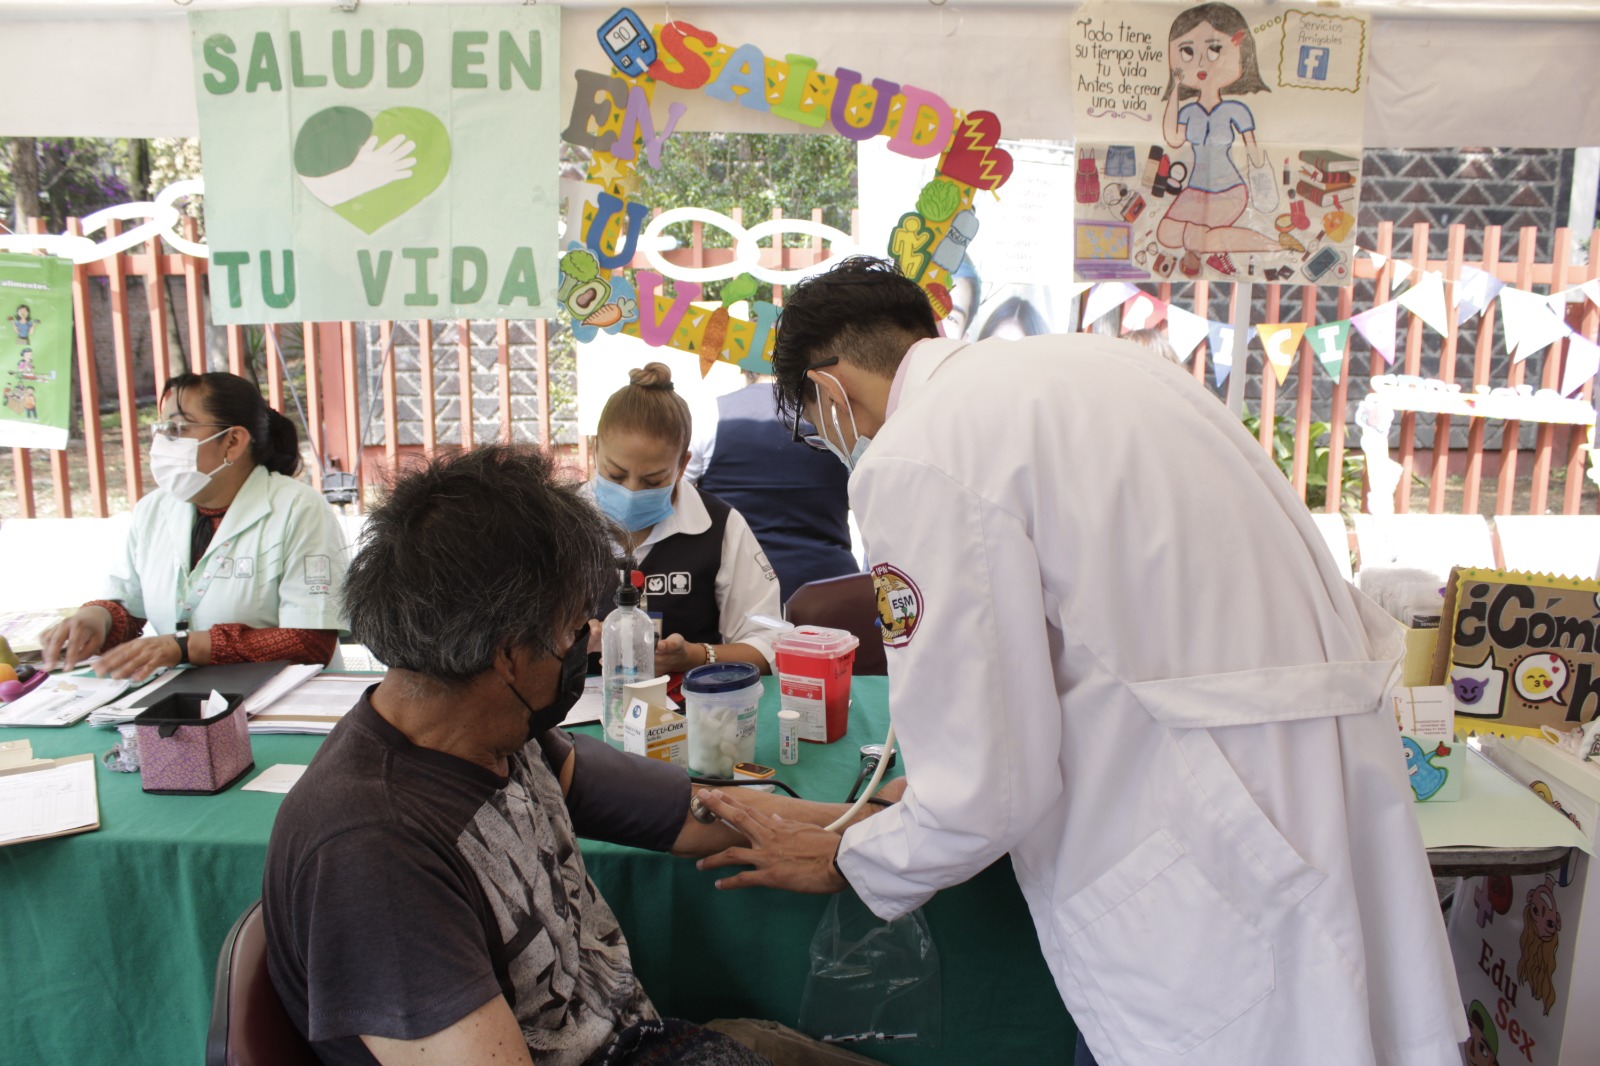 Brinda “Salud en tu vida, Salud para el bienestar” atenciones médicas gratuitas a más de 825 mil personas